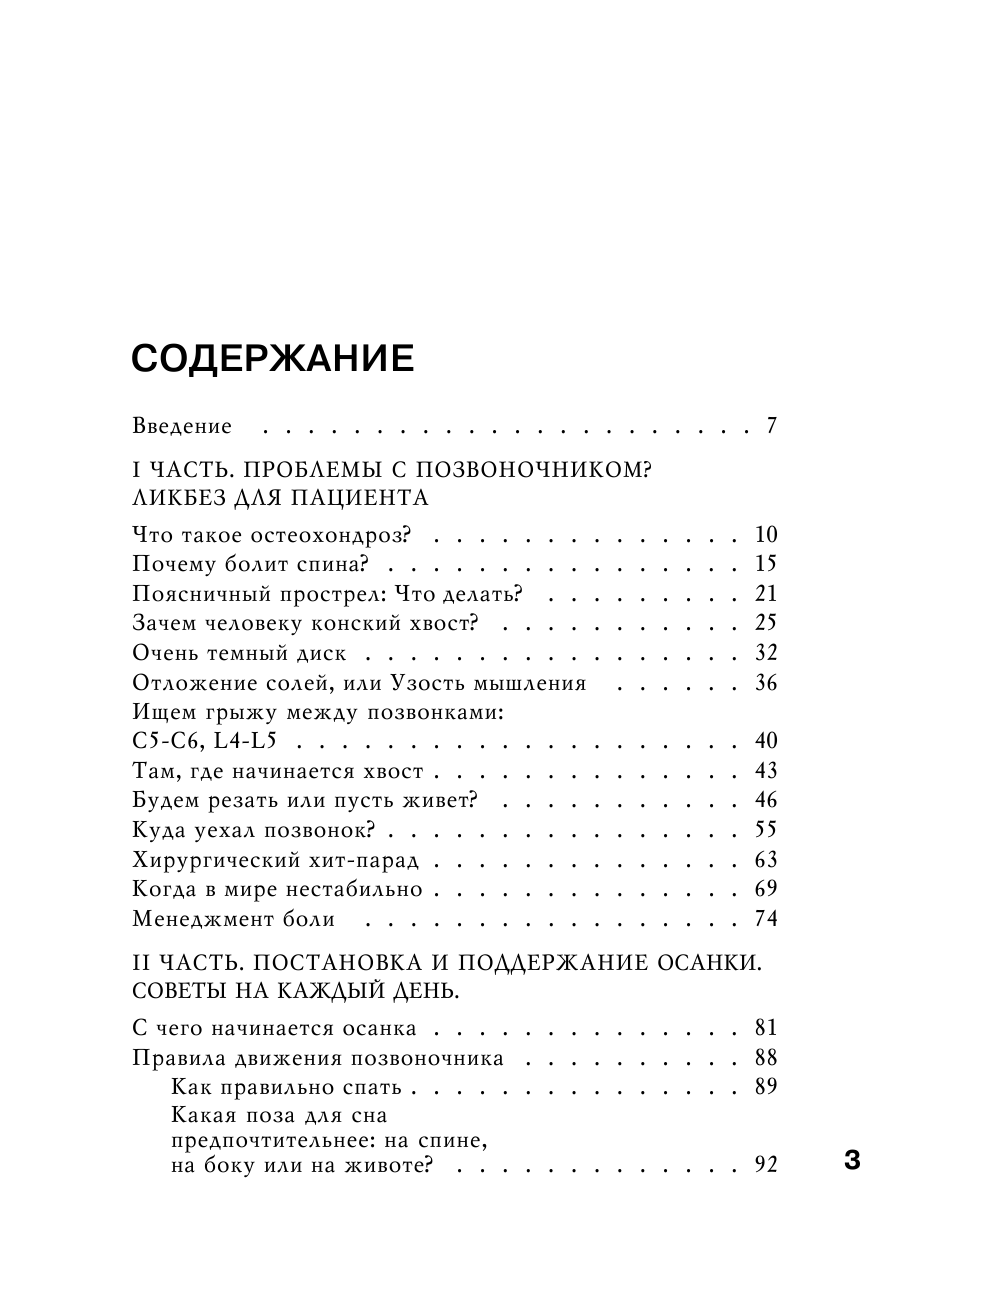 Борщенко И. А. Система Умный позвоночник - страница 2